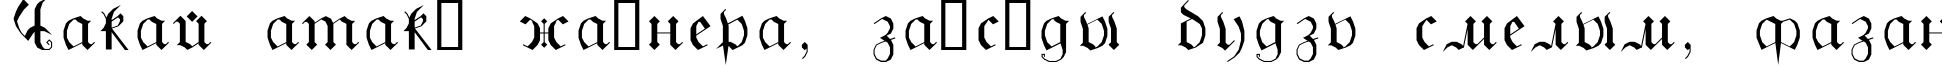 Пример написания шрифтом GothicG текста на белорусском